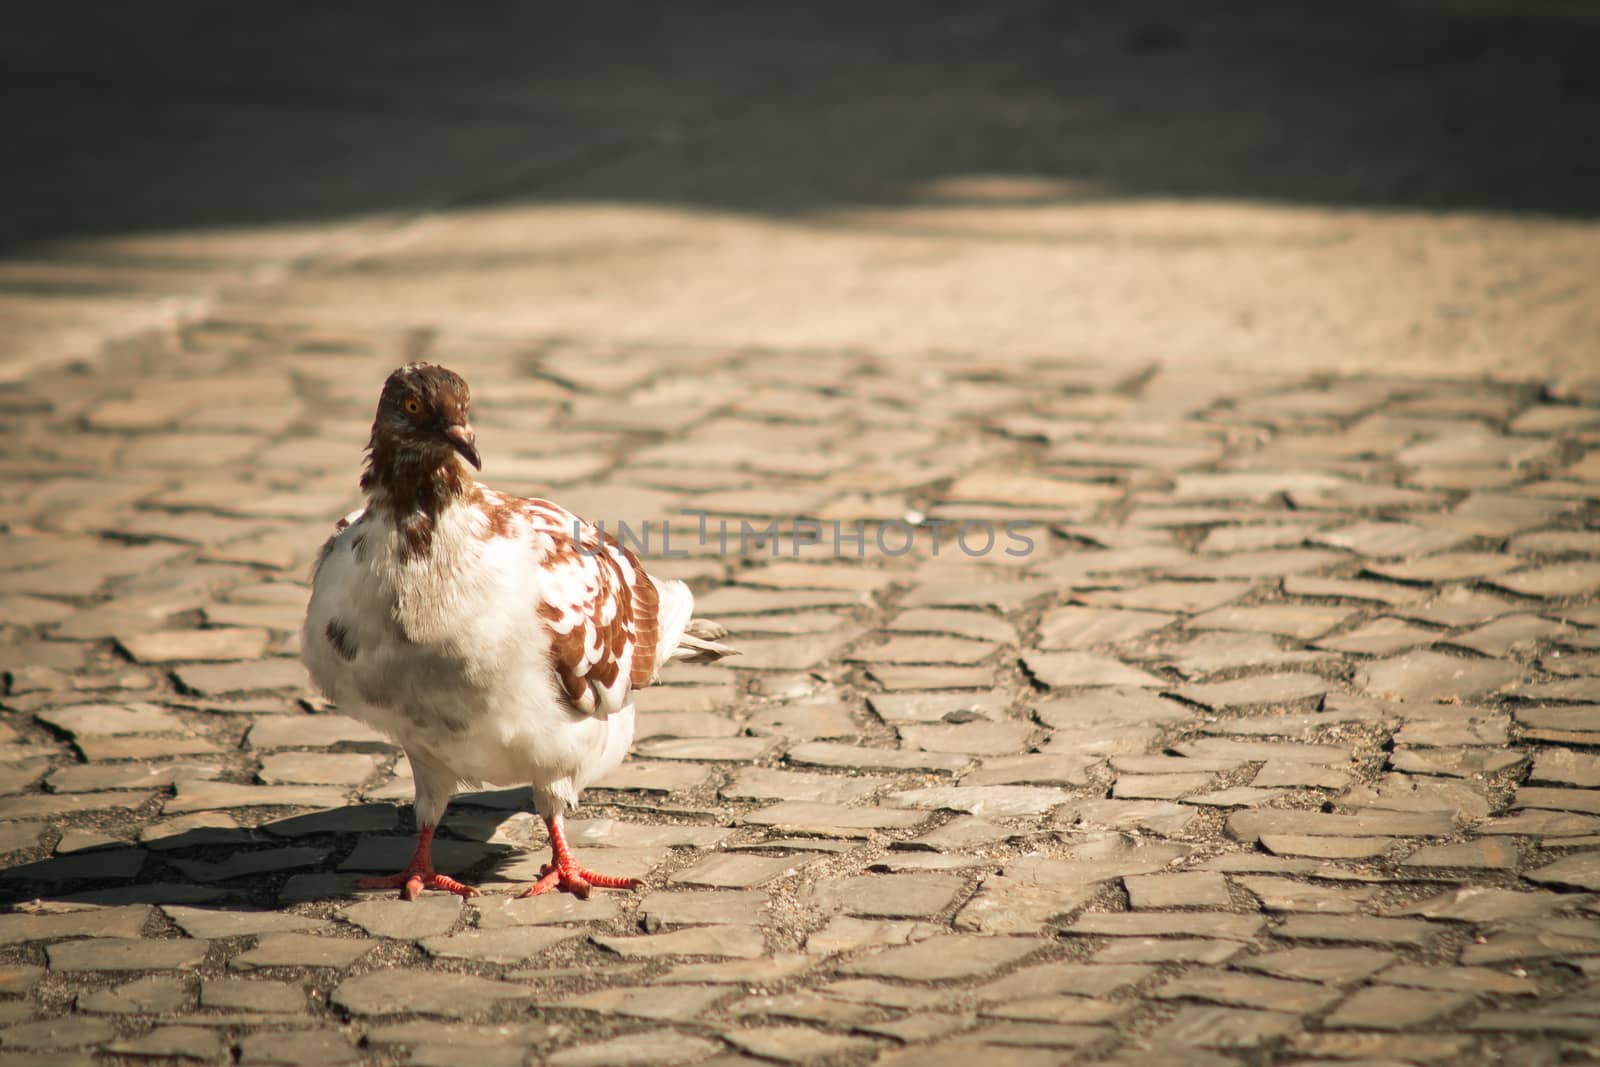 Sunlit pigeon on the sidewalk